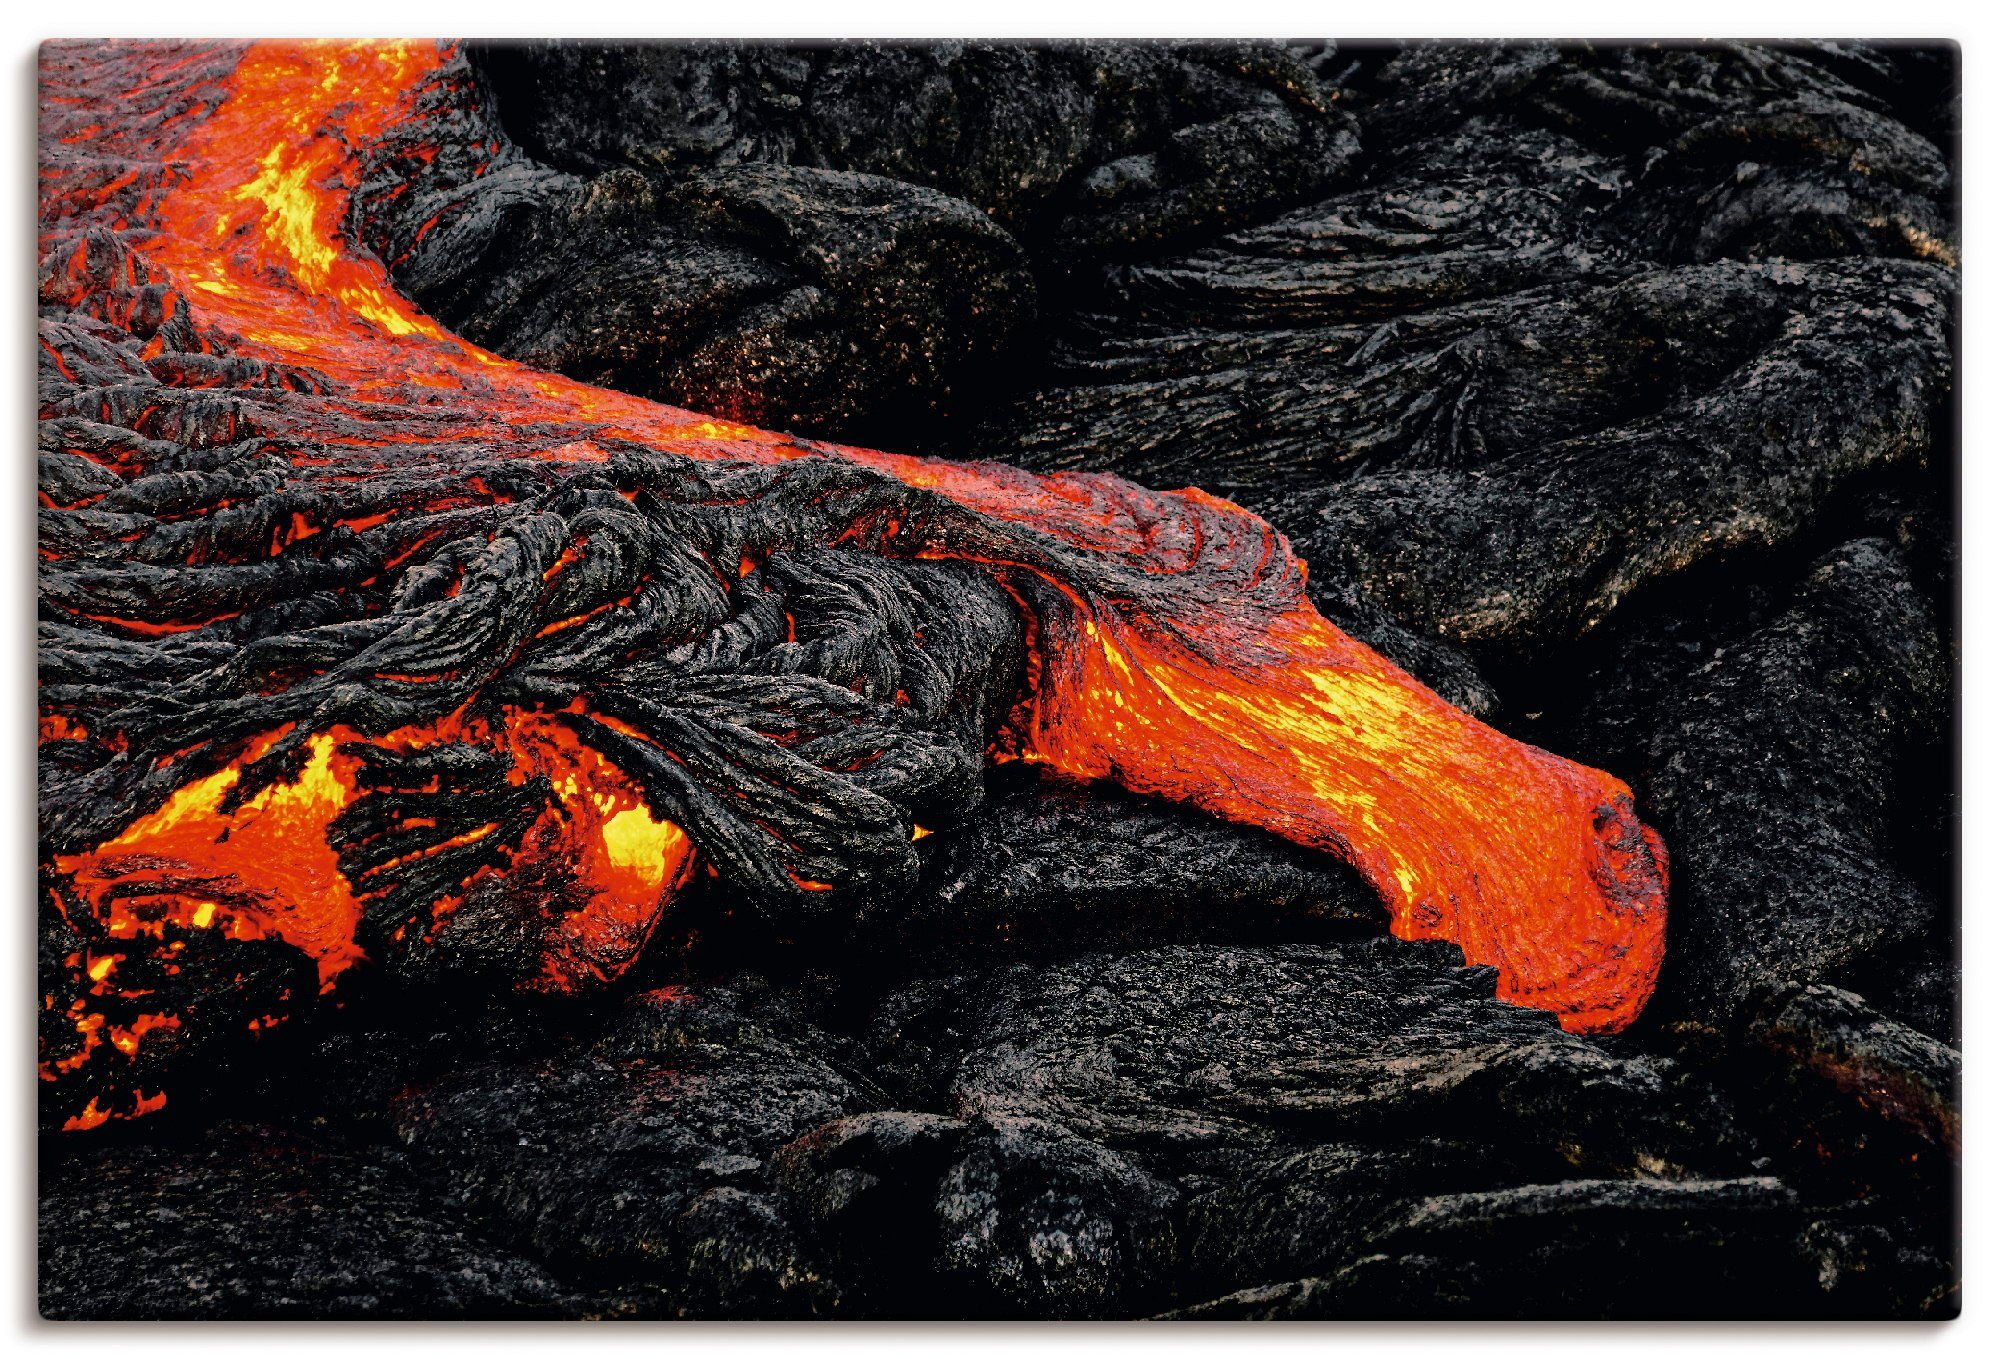 Artland Artprint Vurige lava komt naar buiten bij breuklijn in vele afmetingen & productsoorten - artprint van aluminium / artprint voor buiten, artprint op linnen, poster, muursti